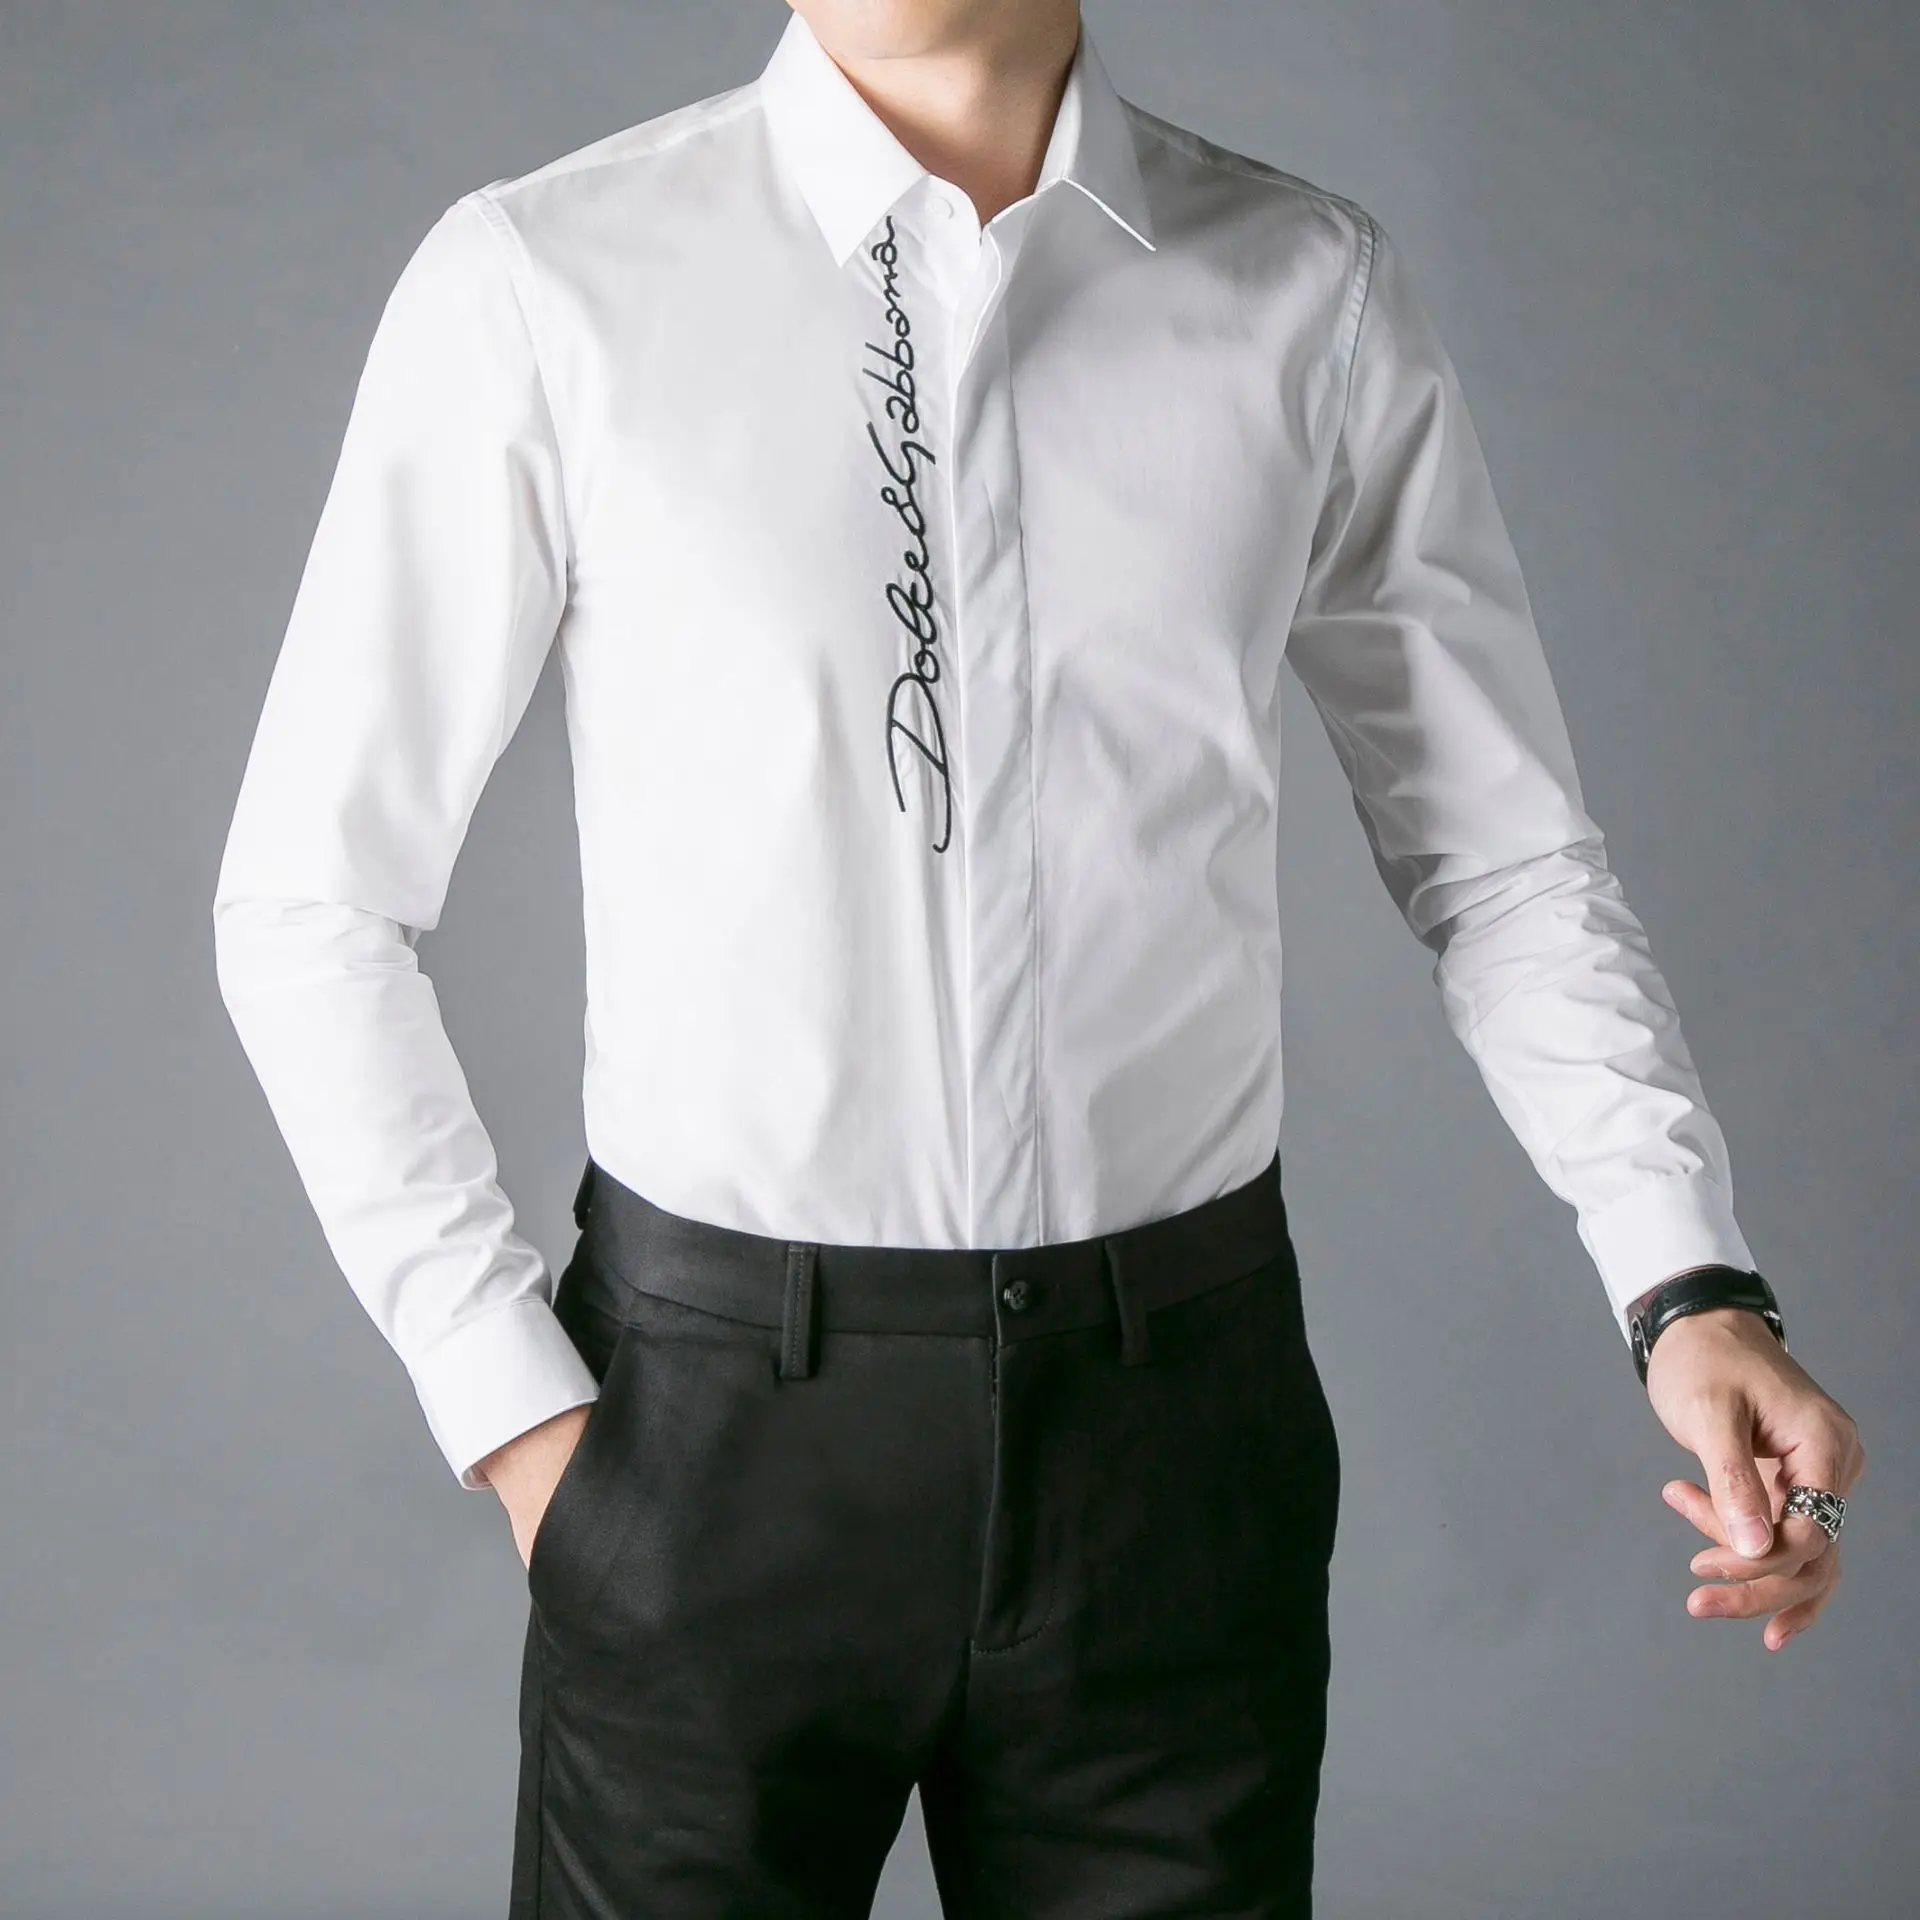 Европейская мода, мужская рубашка, Лидирующий бренд, деловая Мужская одежда, рубашки с длинным рукавом, тонкая сорочка, homme, высокое качество, хлопковые рубашки